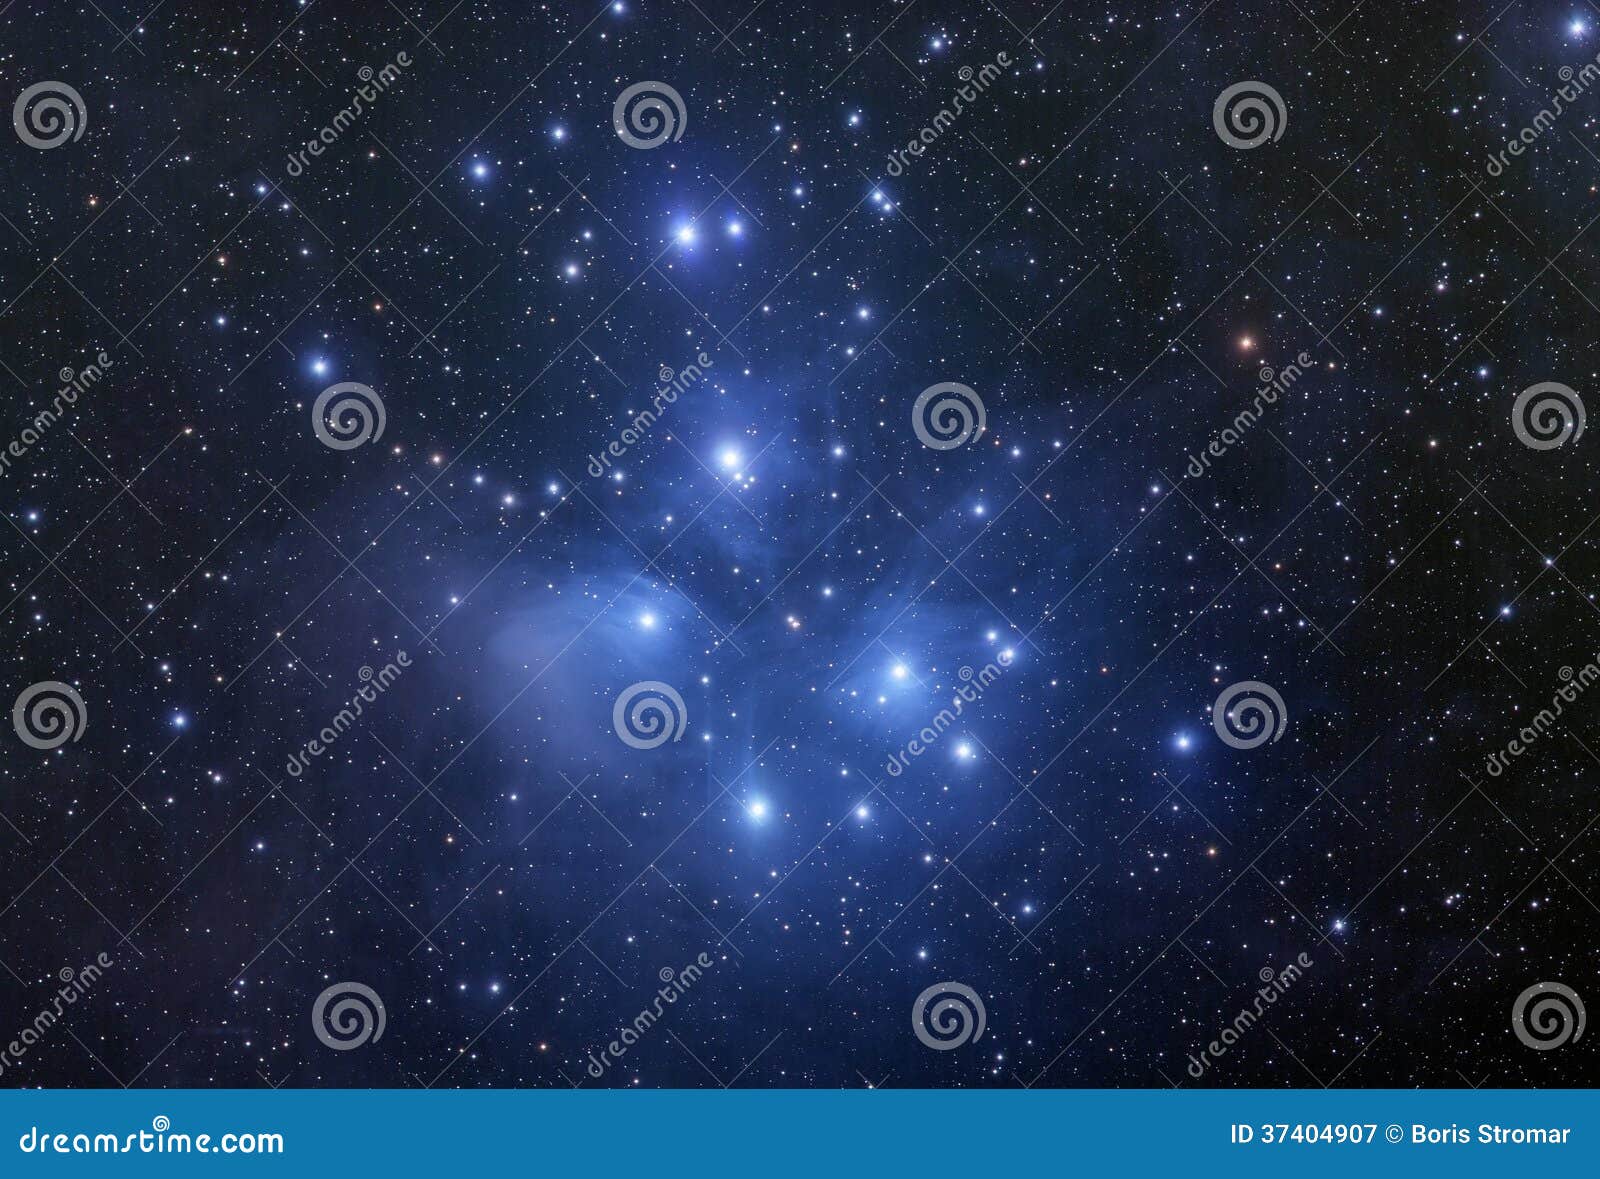 pleiades star cluster